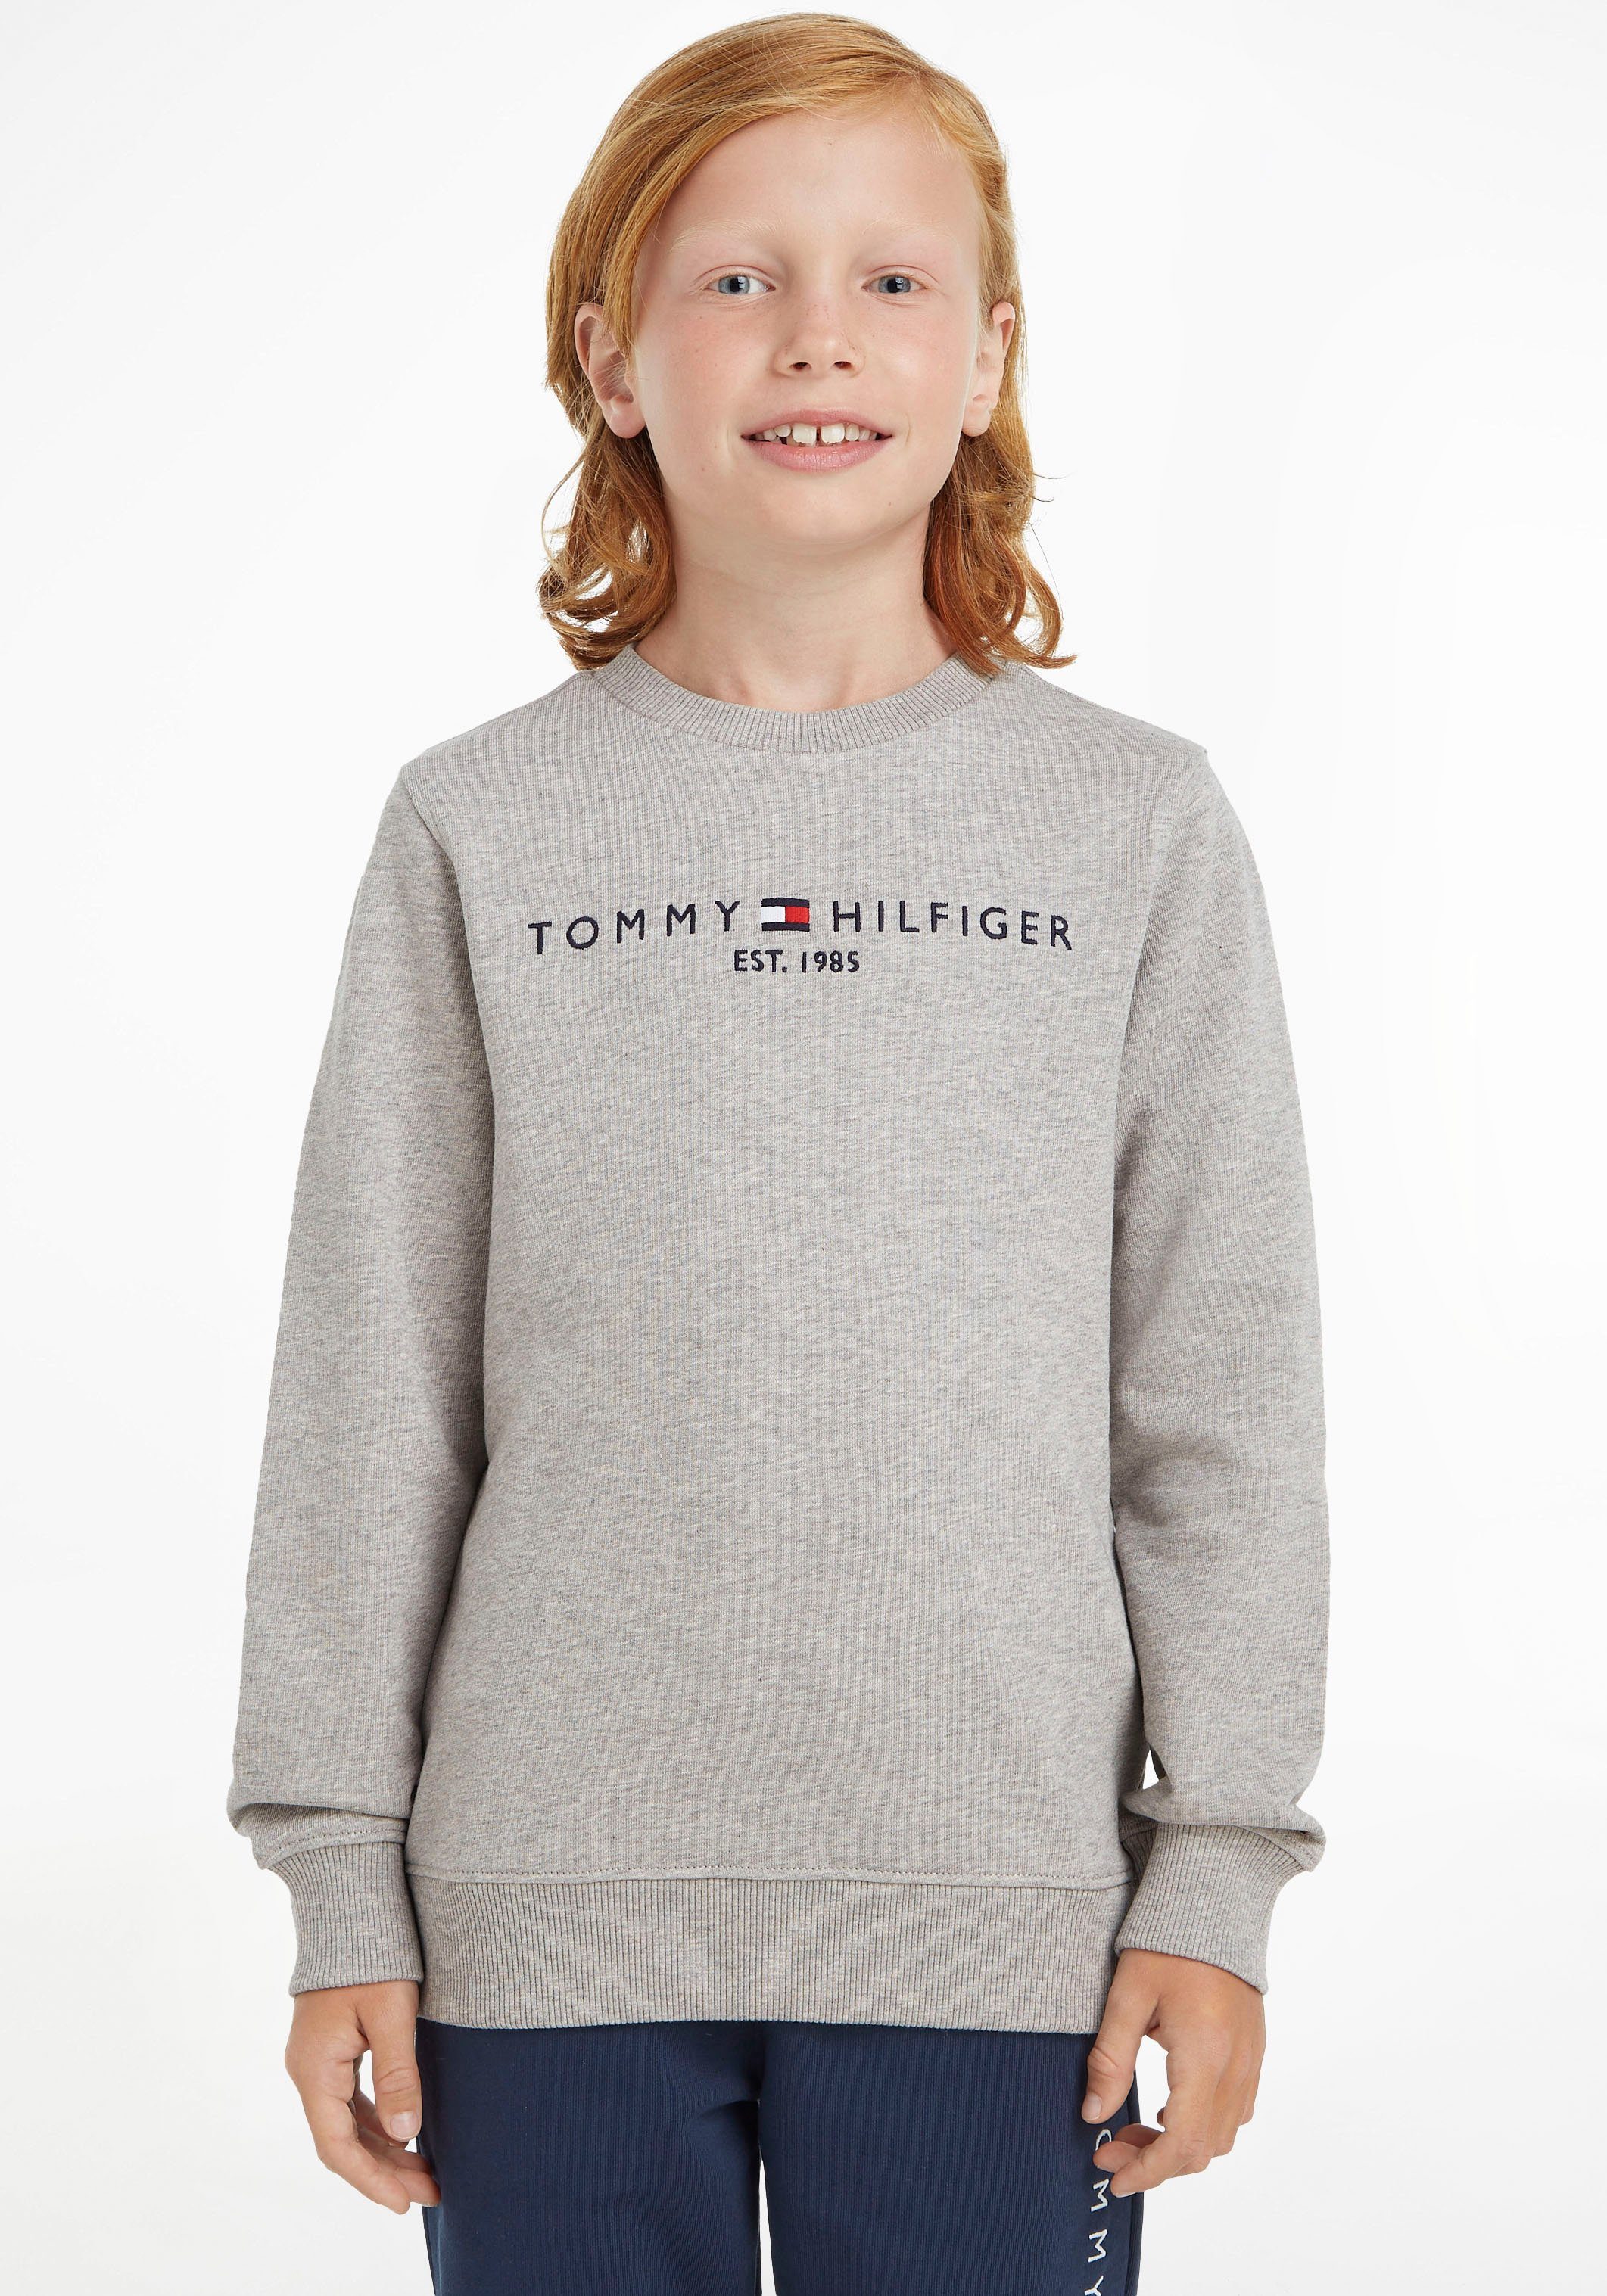 Mädchen MiniMe,für Sweatshirt Tommy Junior Hilfiger SWEATSHIRT Kids und Jungen ESSENTIAL Kinder